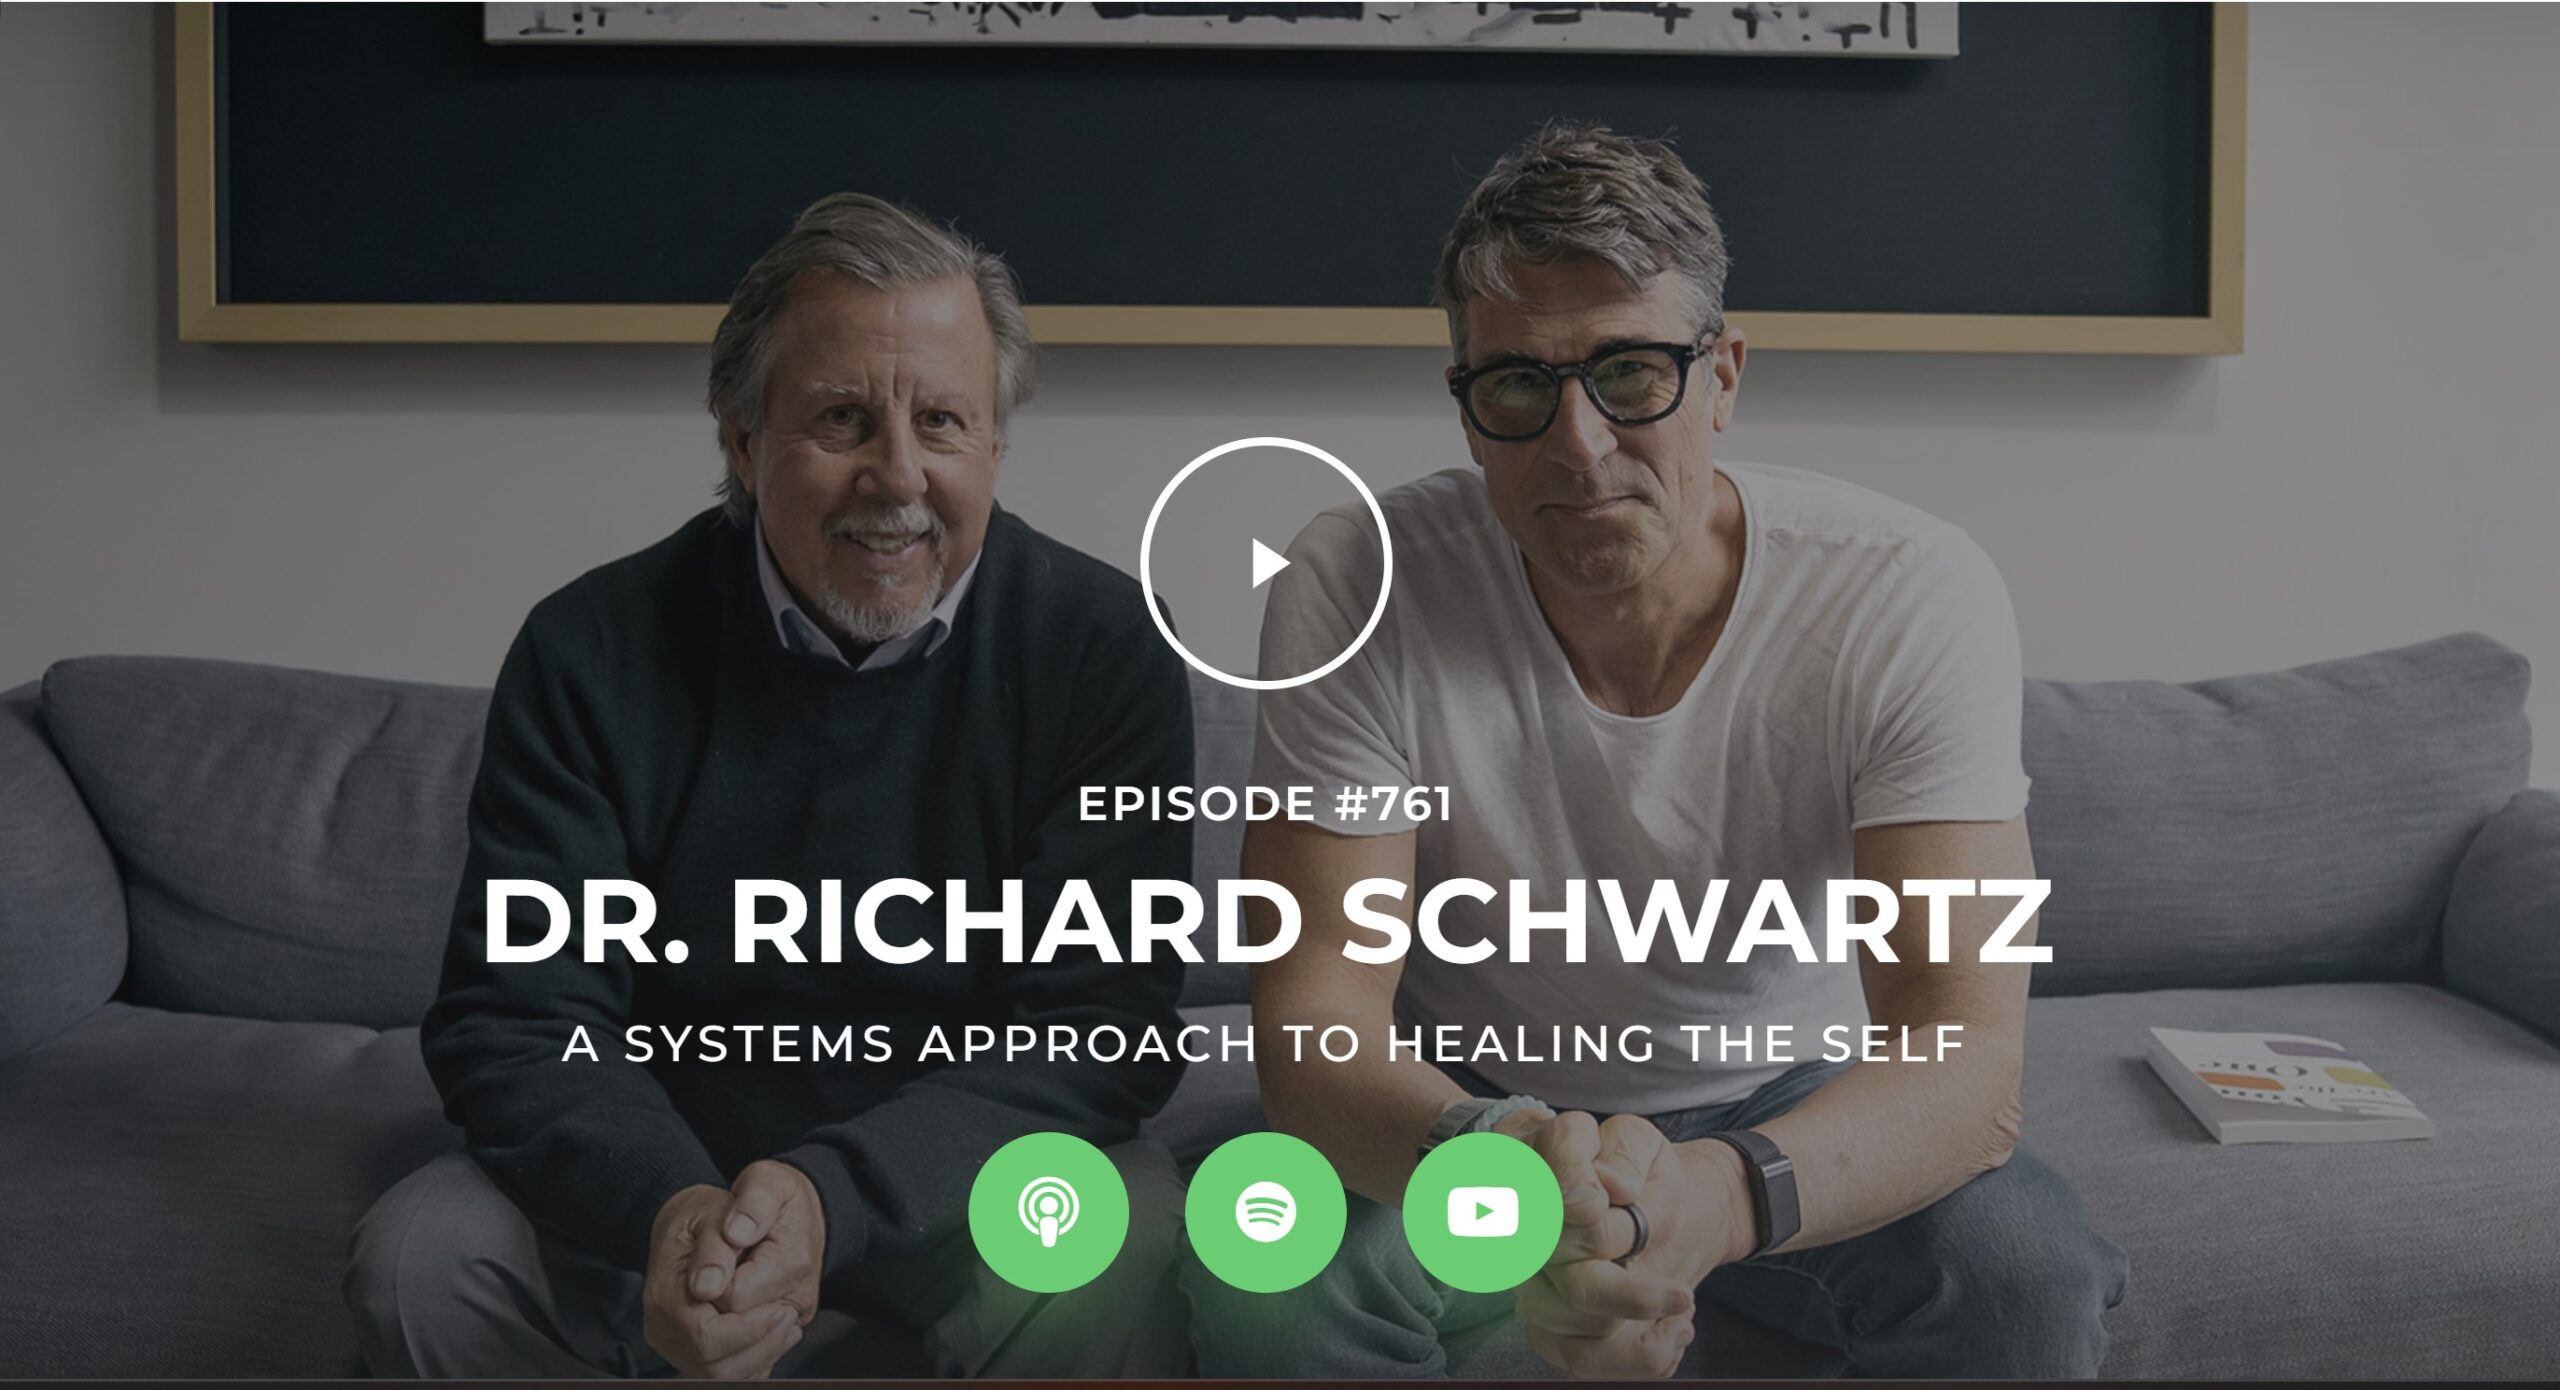 Richard Schwartz and Rich Roll